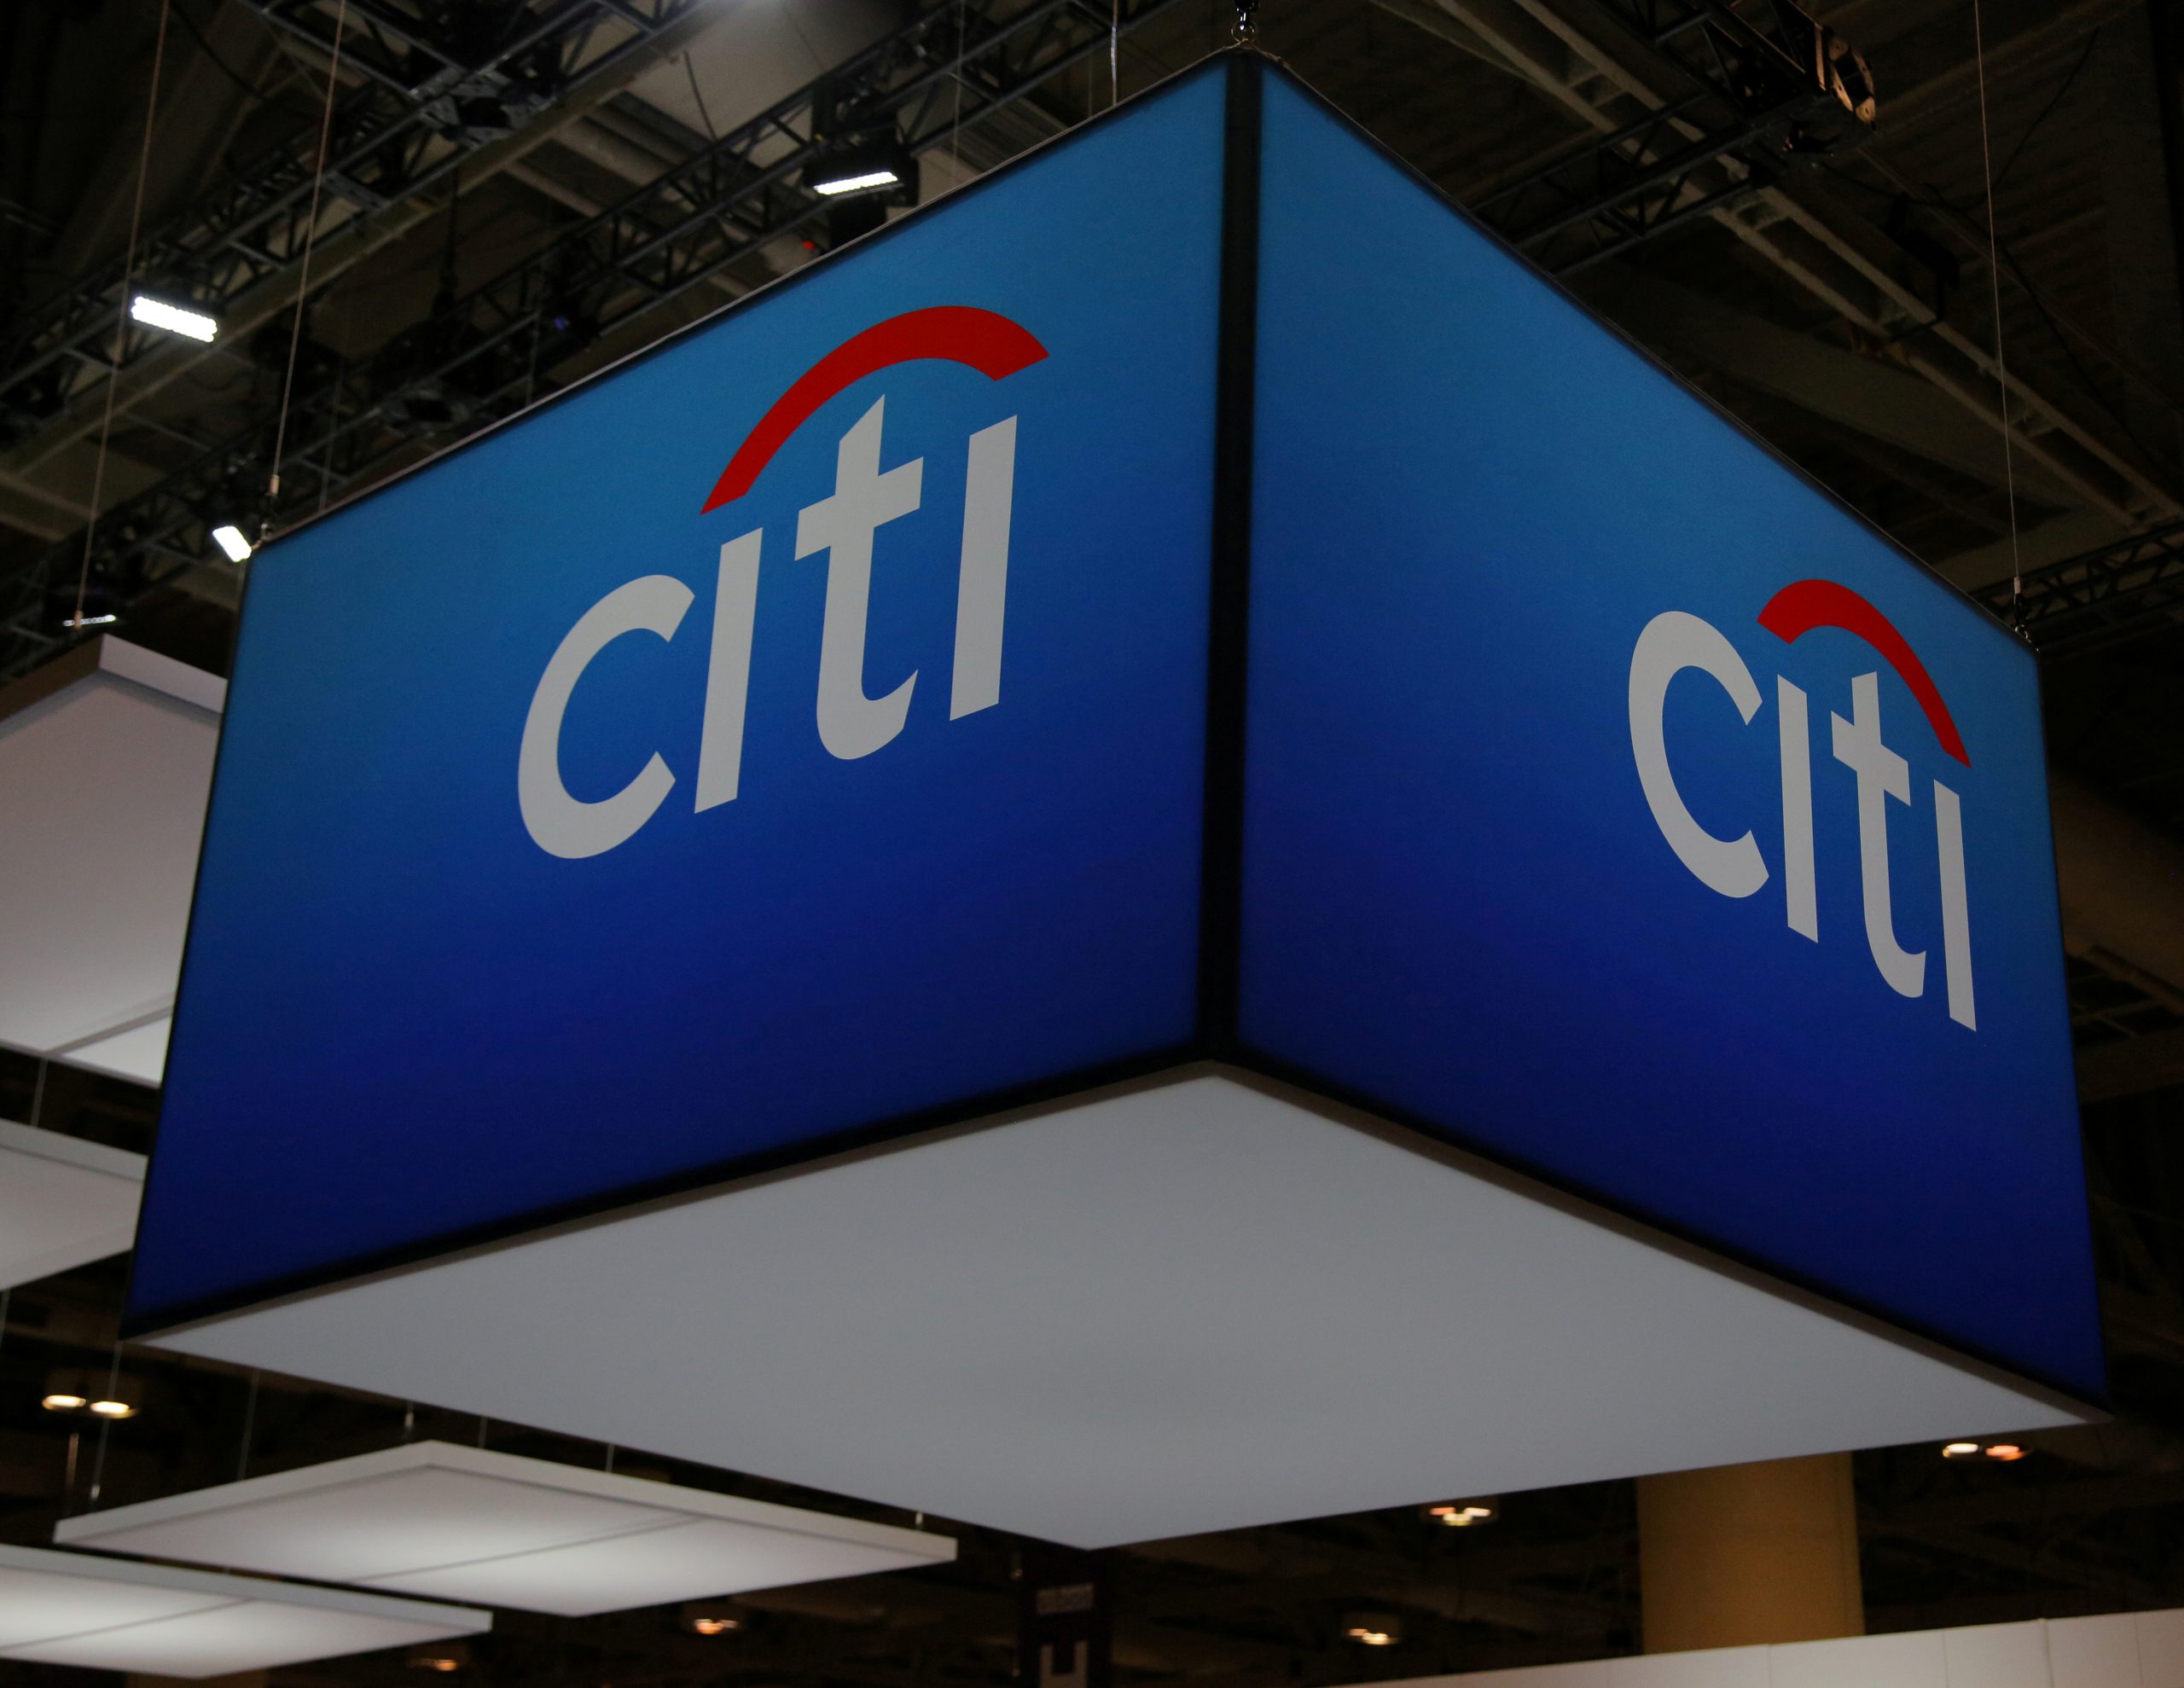 Ρωσία: Στο κύμα εξόδου ξένων επιχειρήσεων προστέθηκε και η Citigroup